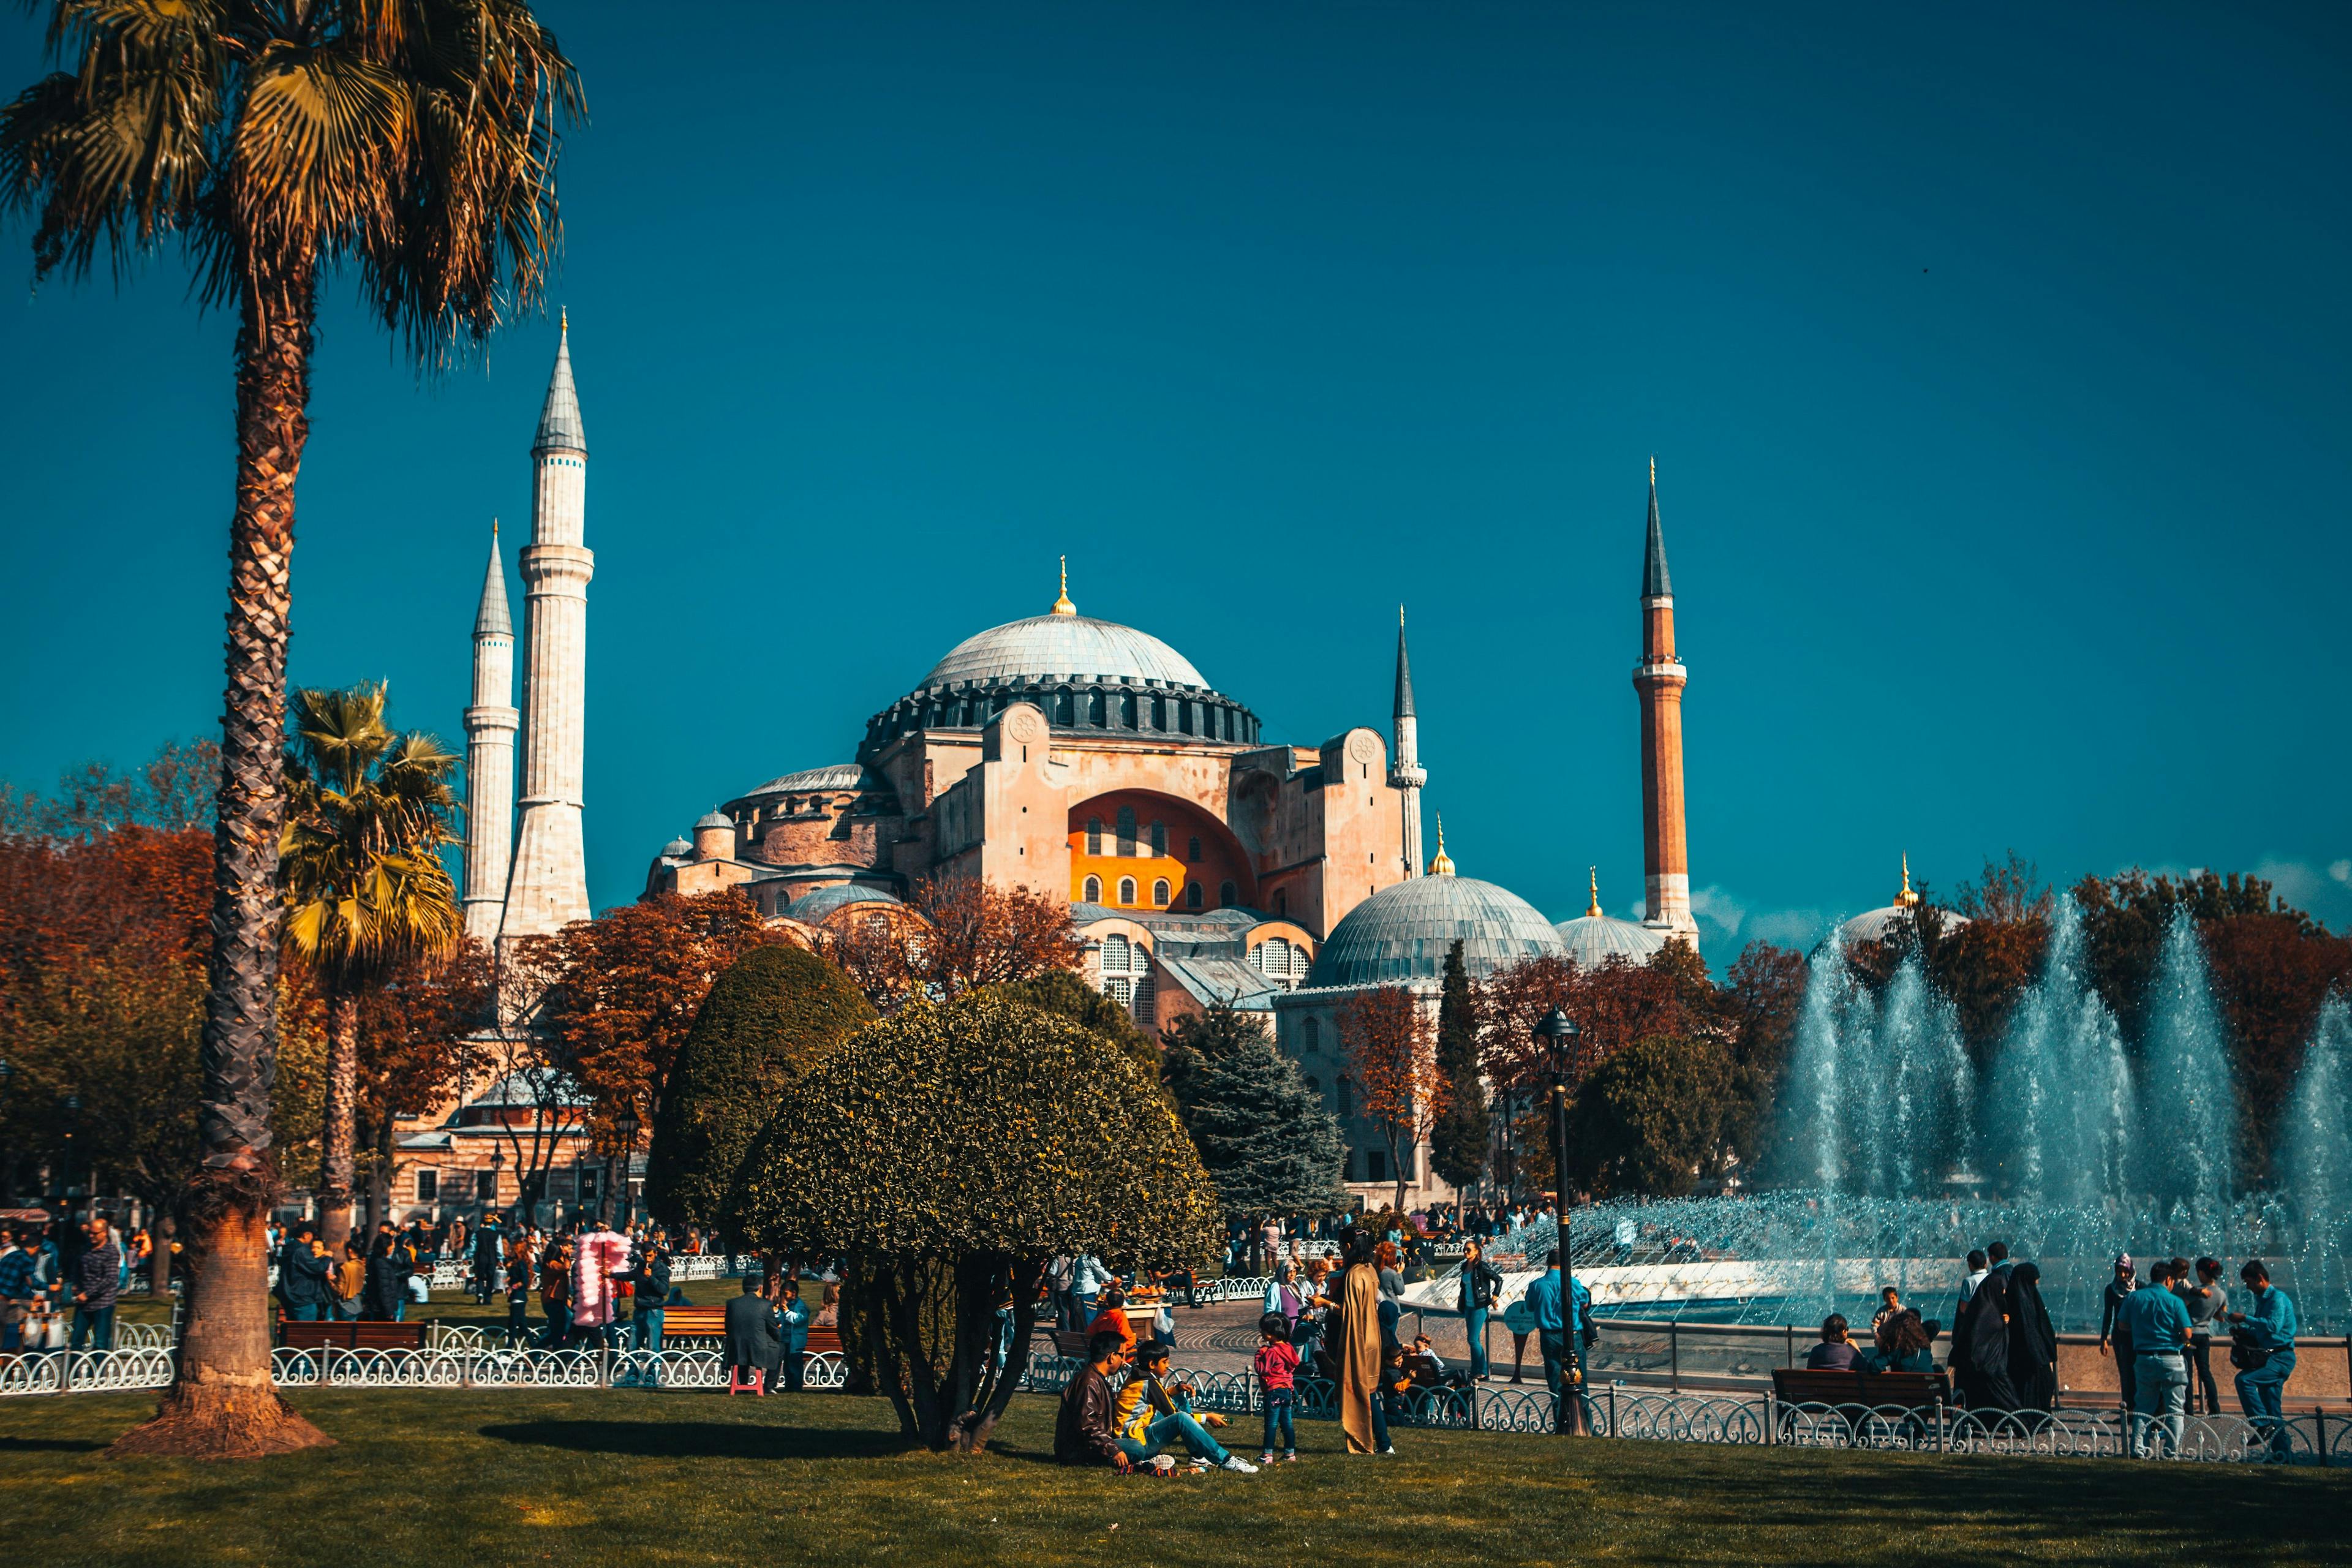 The Hagia Sophia mosque in Istanbul Turkey